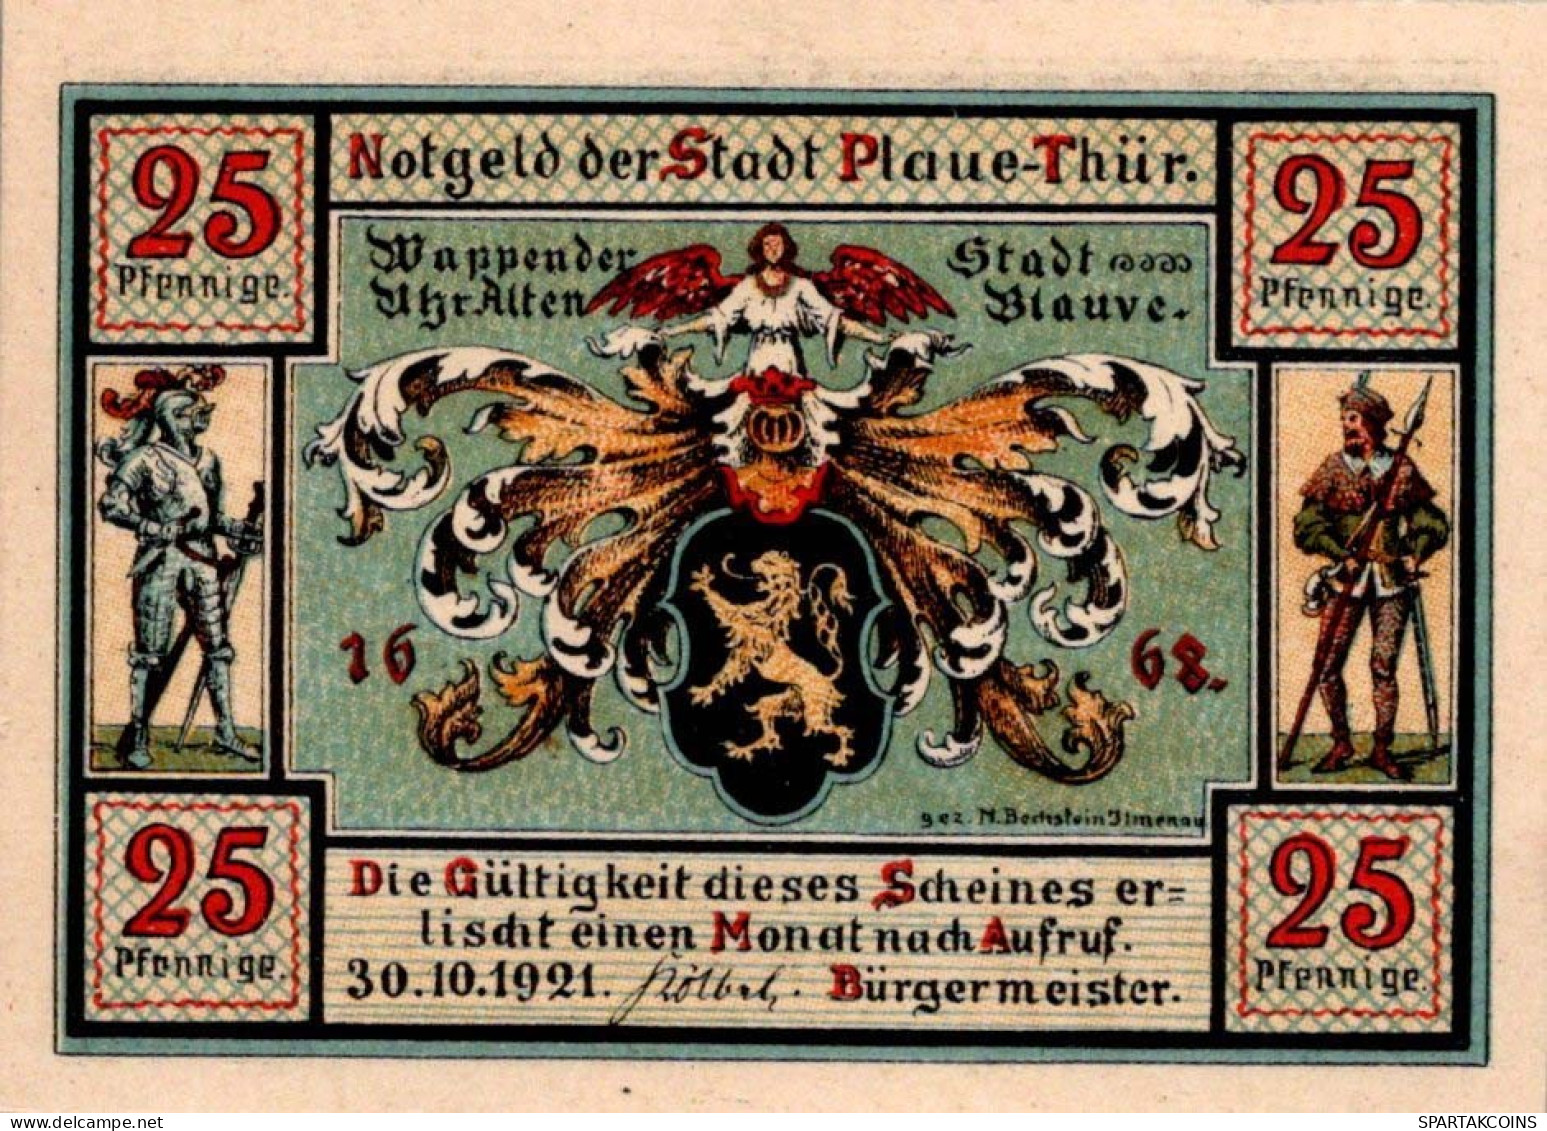 25 PFENNIG 1921 Stadt PLAUE Thuringia UNC DEUTSCHLAND Notgeld Banknote #PB542 - [11] Emissions Locales